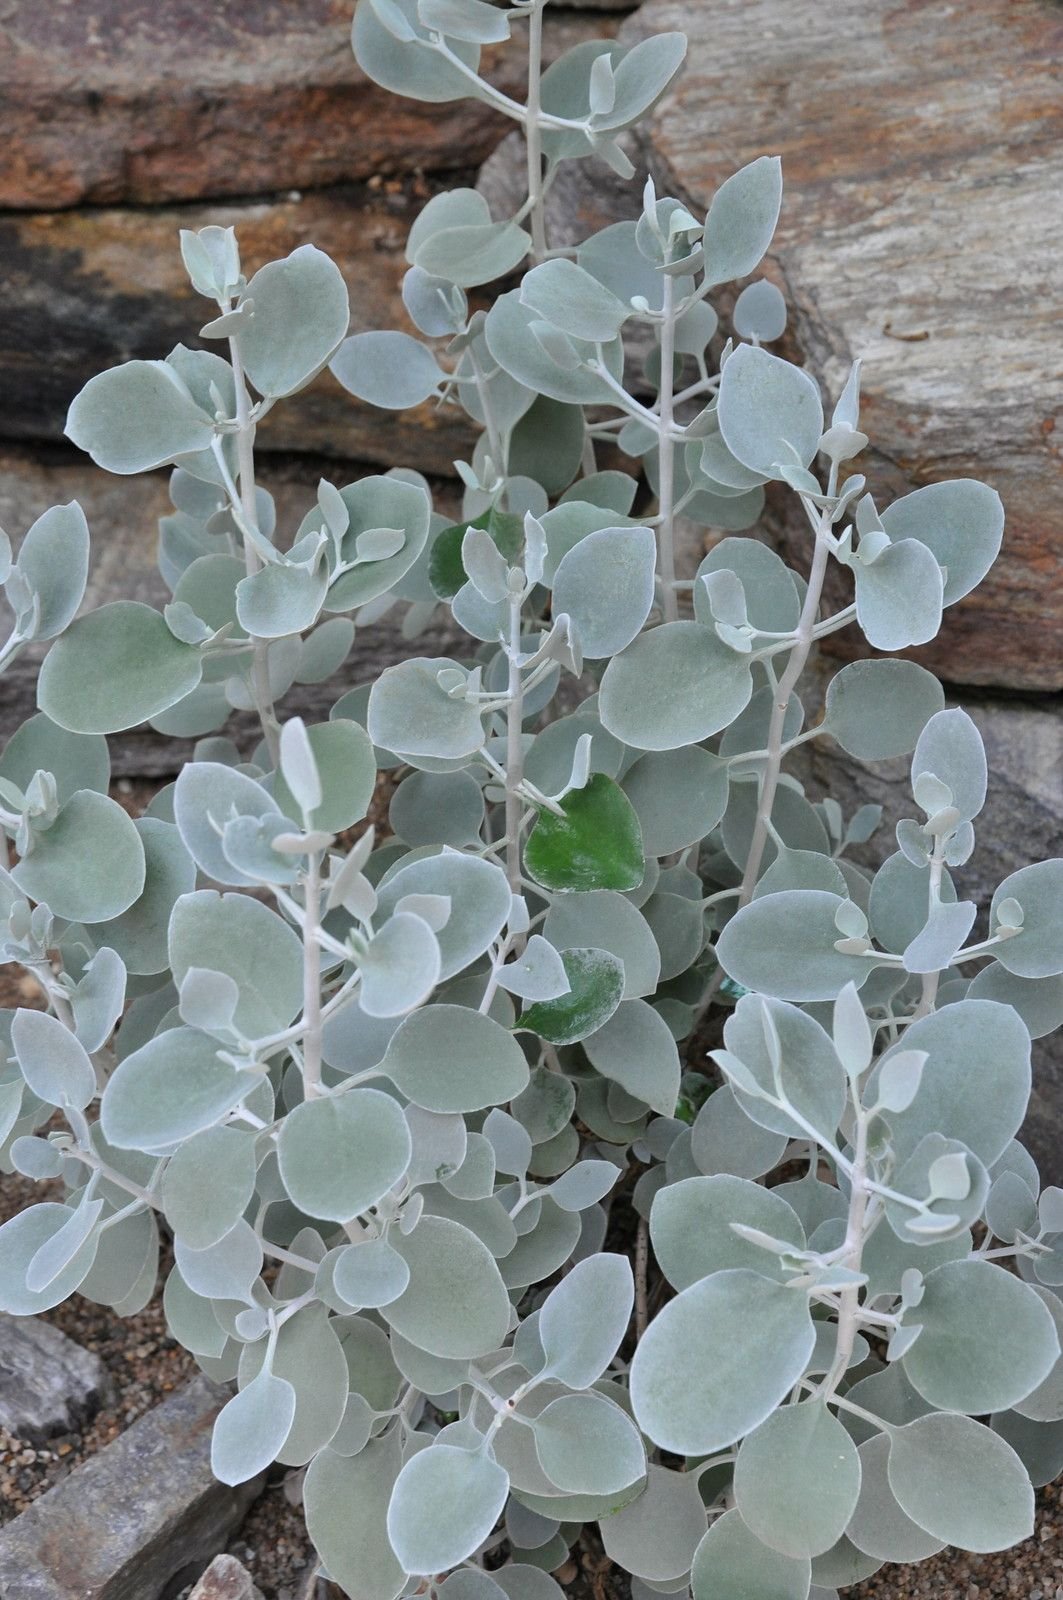 растения серебристого цвета фото и названия